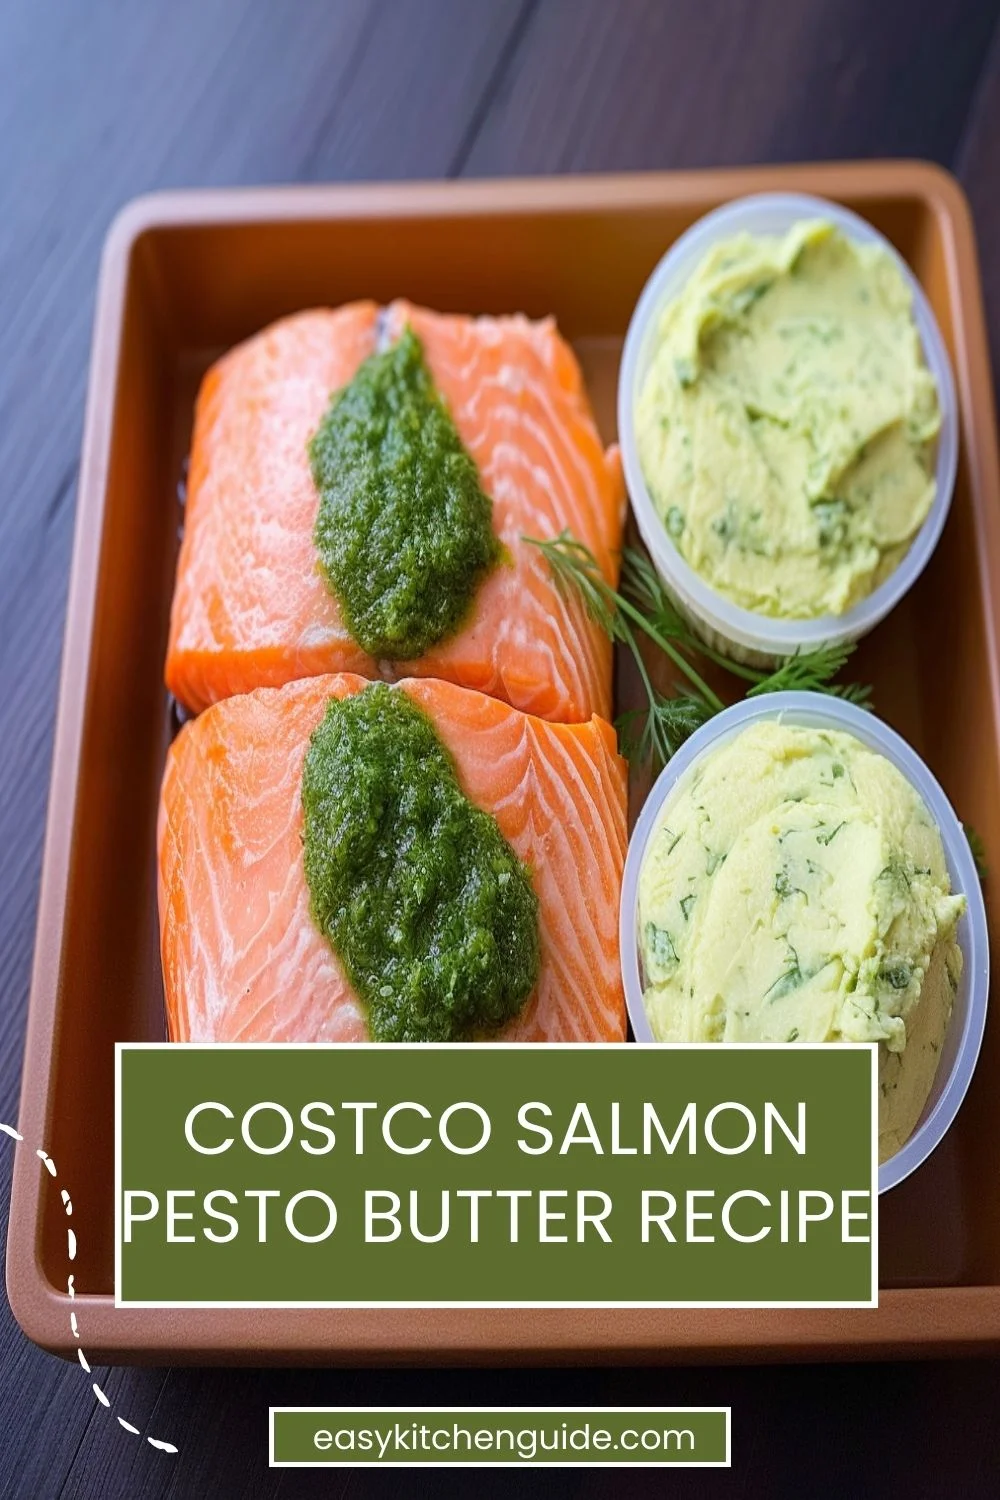 Costco Salmon Pesto Butter Recipe